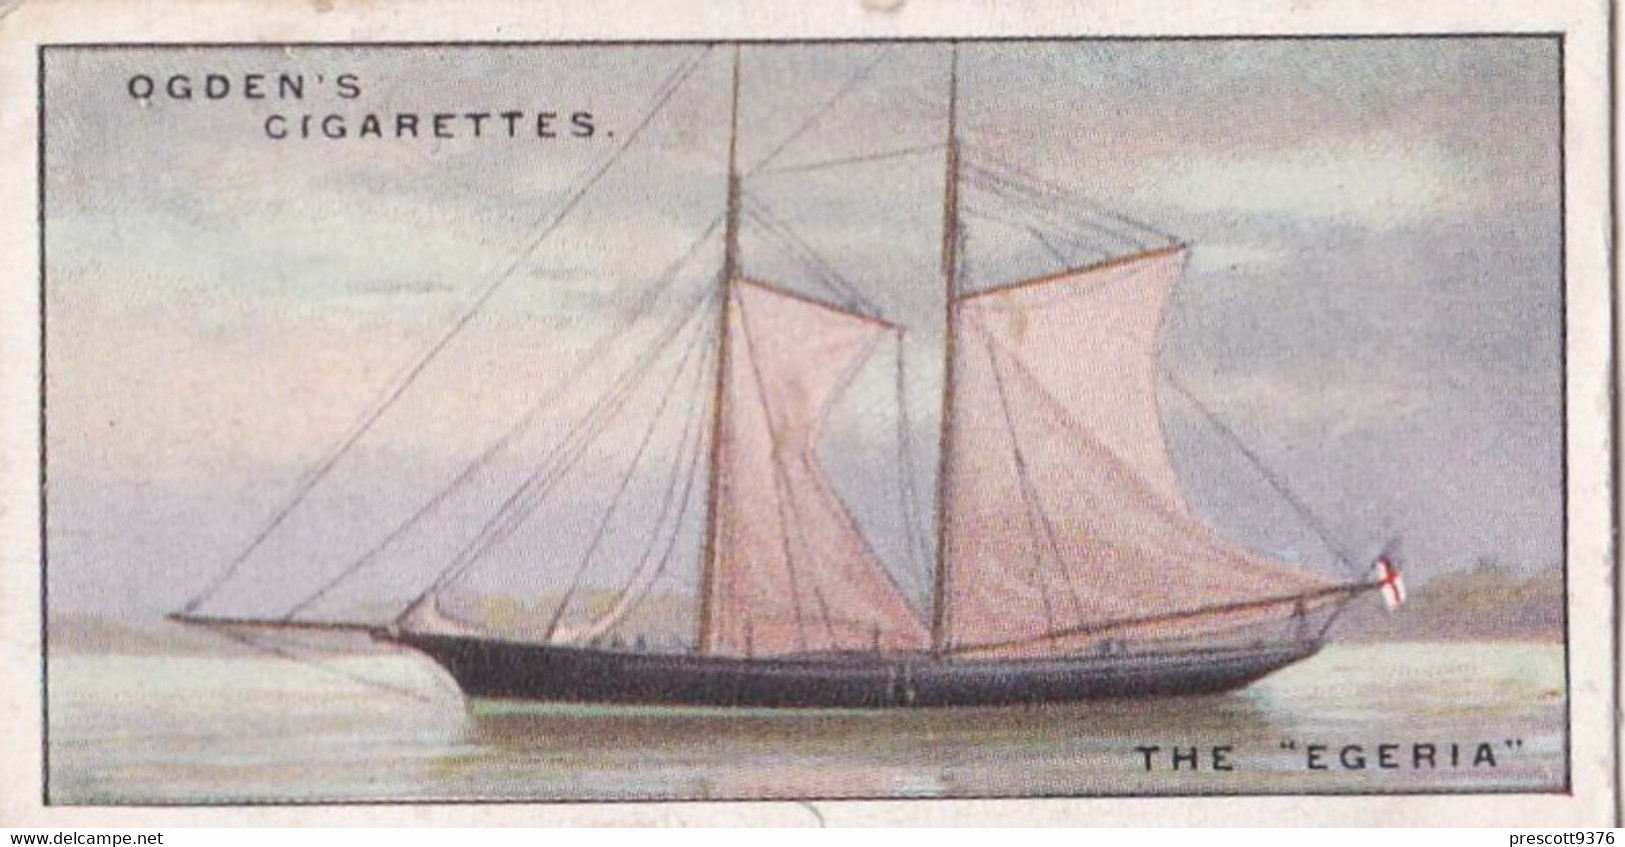 Yachts & Motor Boats 1931 -  17 The Egeria - Ogdens  Cigarette Card - Original  - Ships - Sealife - Ogden's